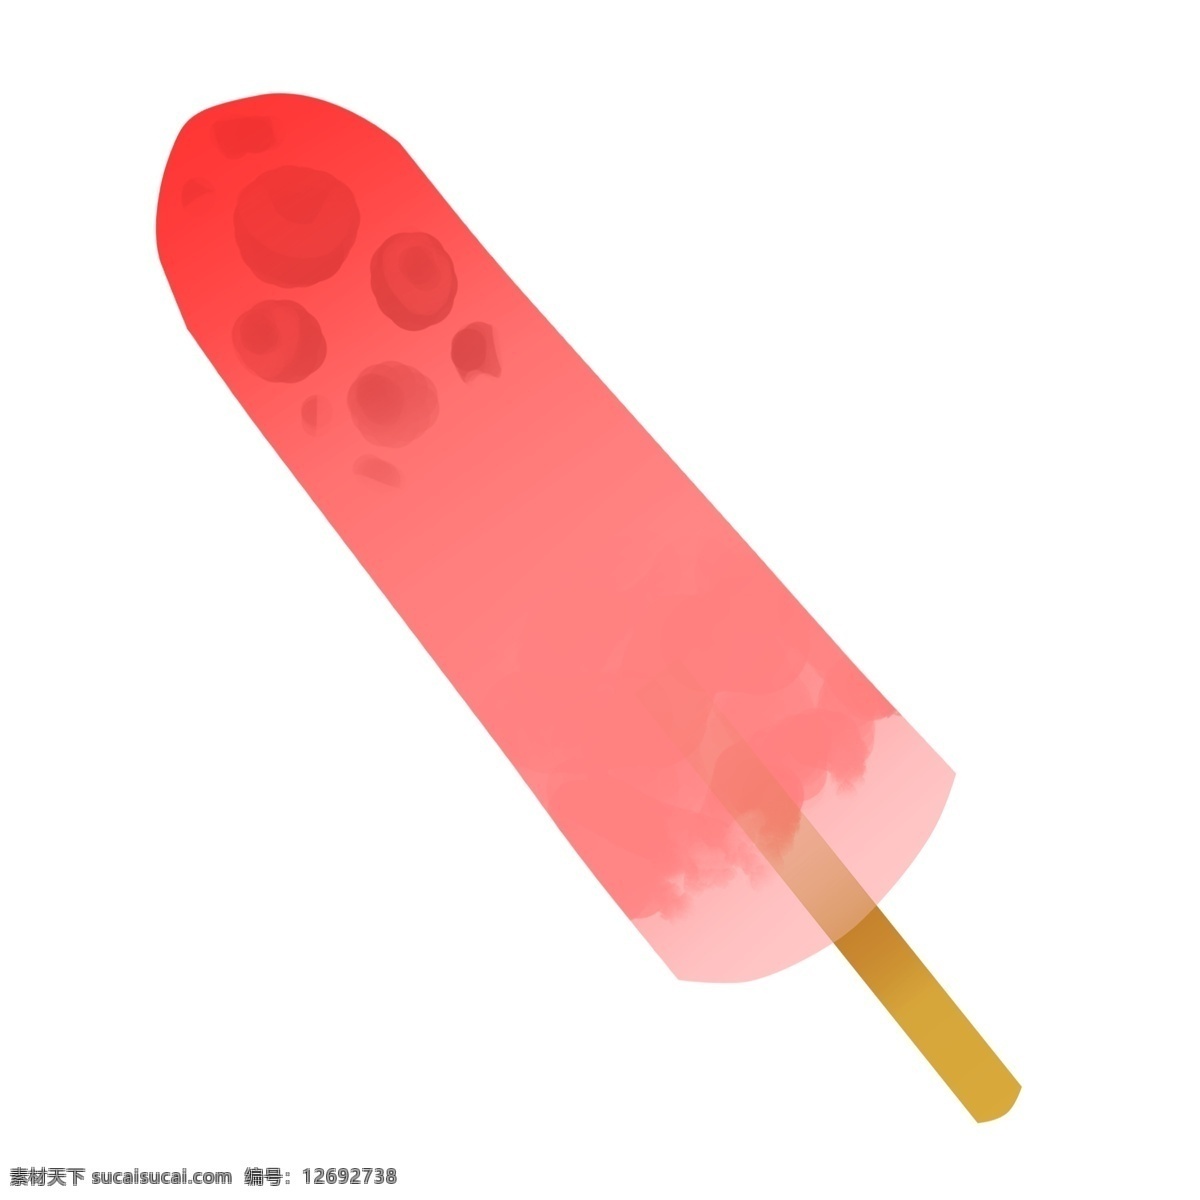 西瓜 冰淇淋 插画 红色 夏季 水果